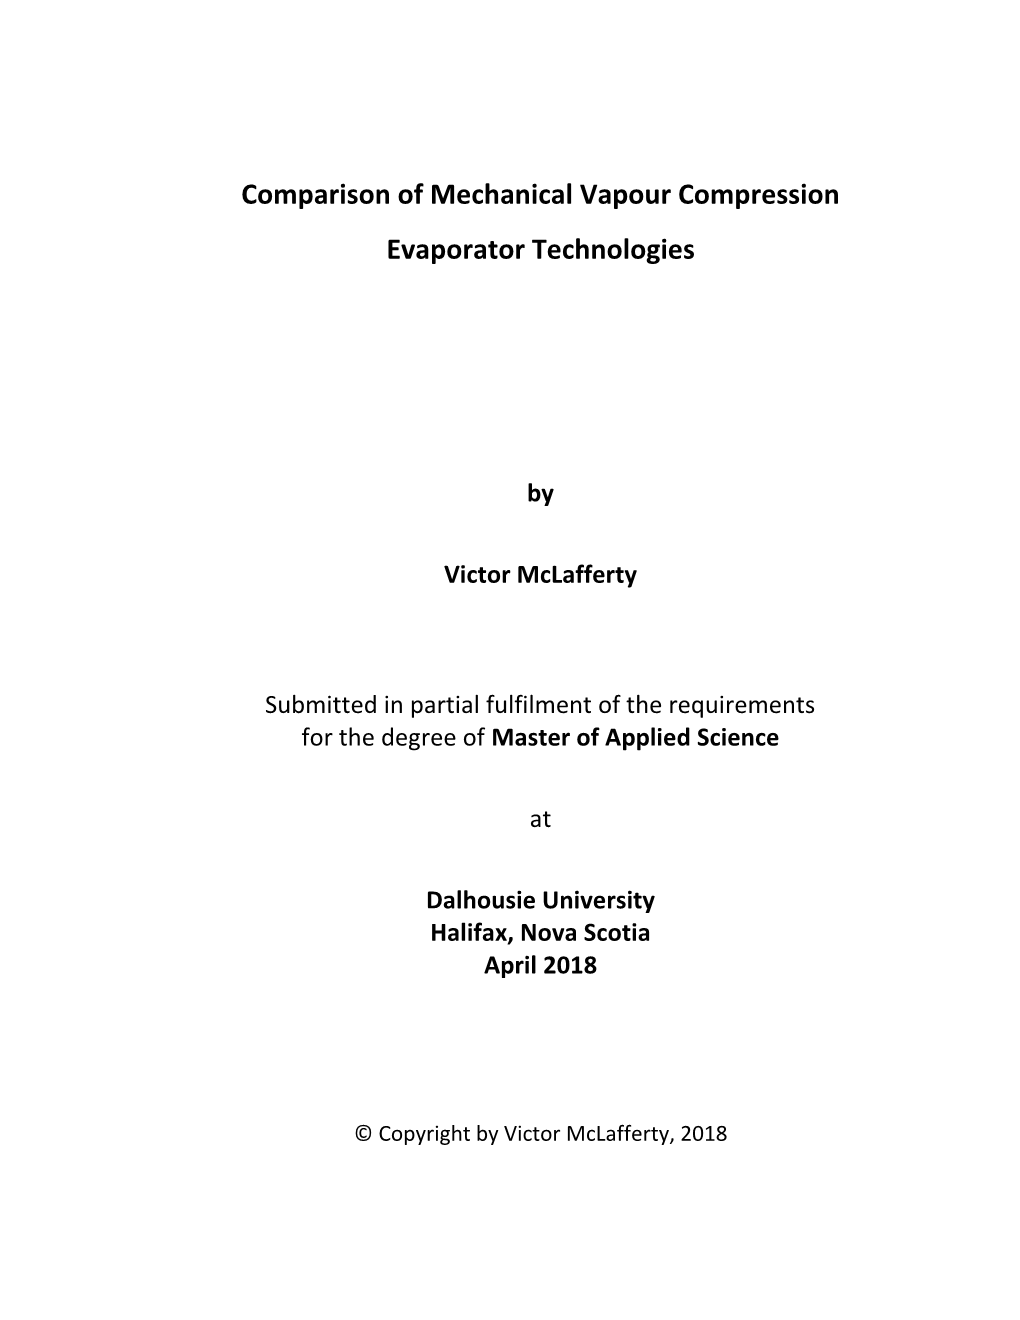 Comparison of Mechanical Vapour Compression Evaporator Technologies